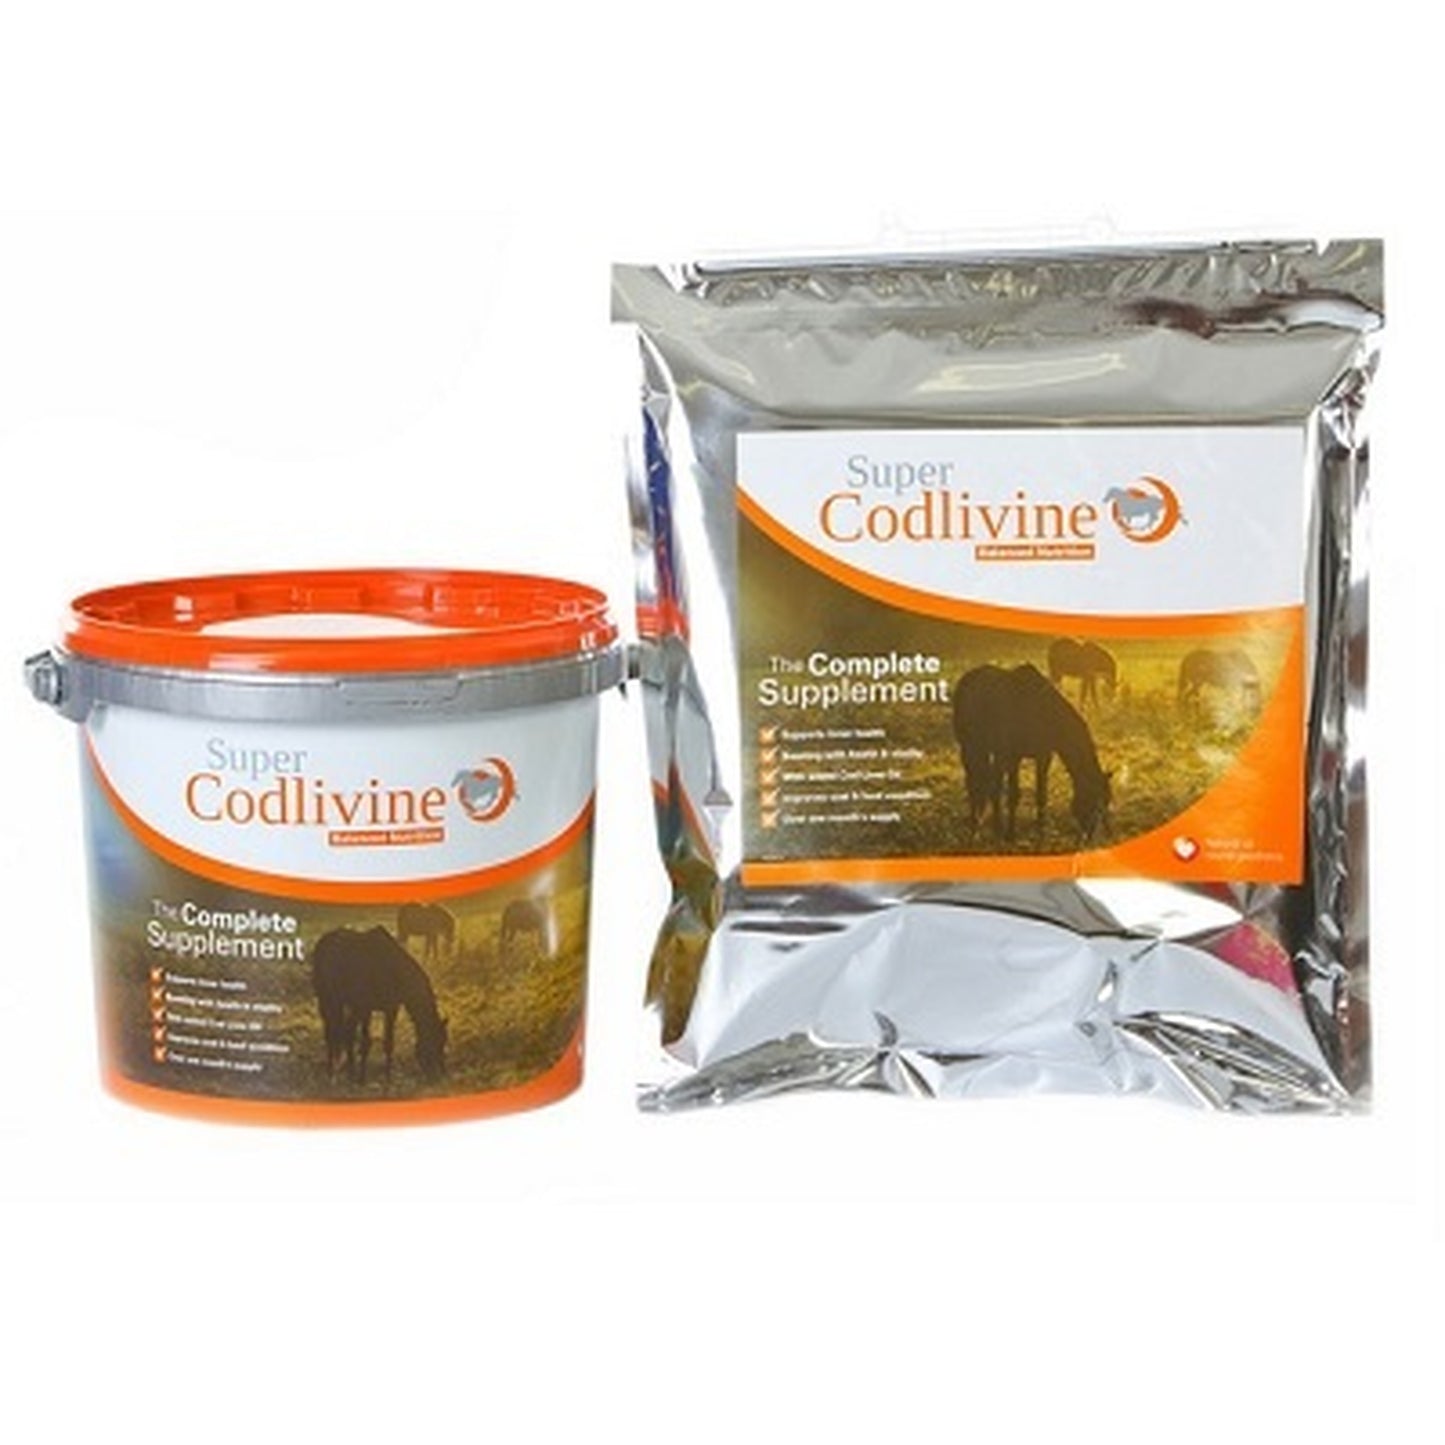 Super Codlivine Complete Supplement 15 kg